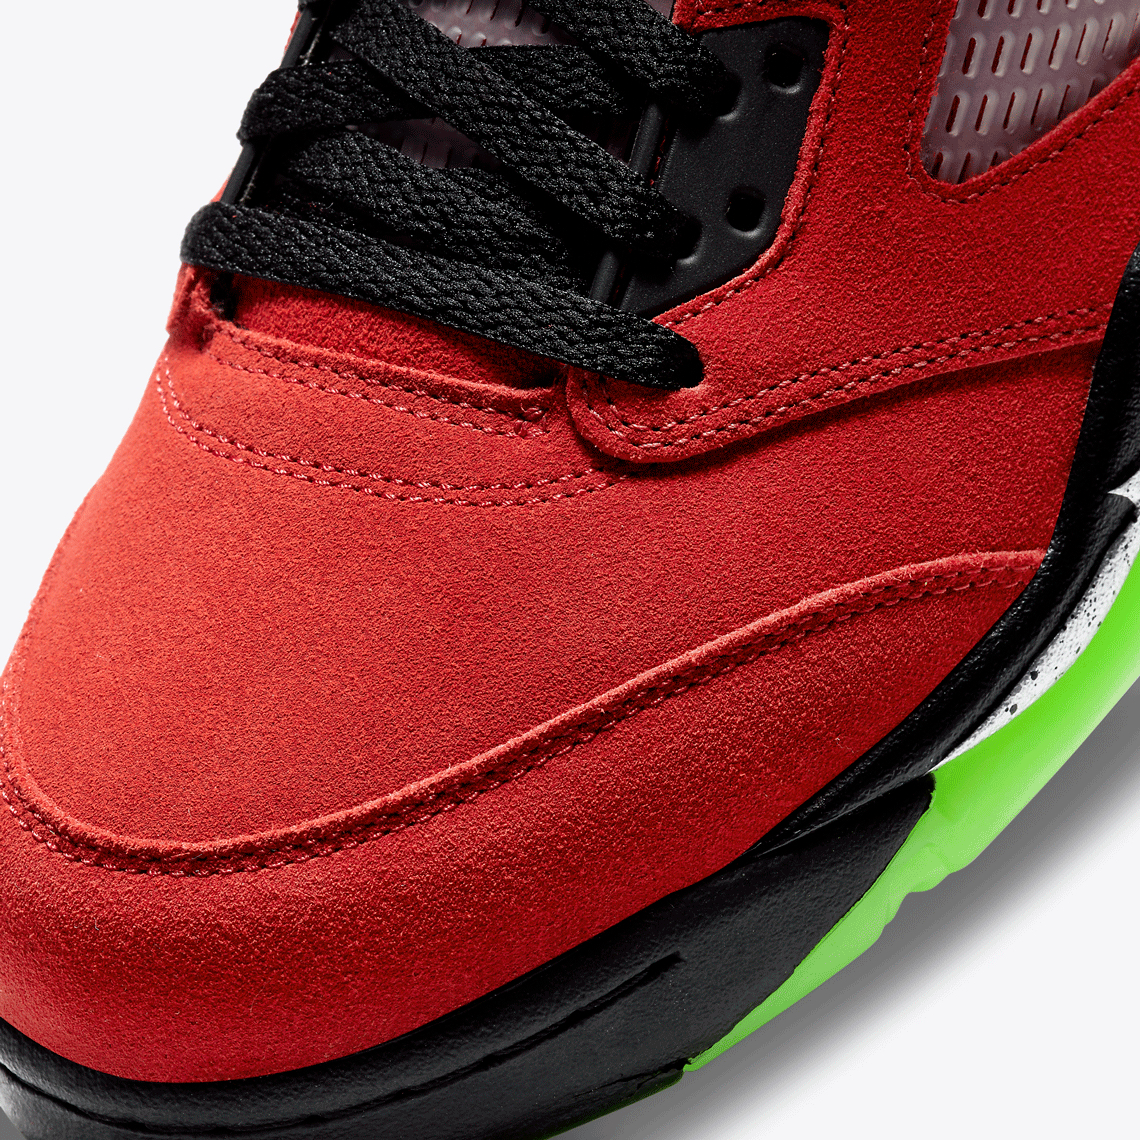 Air Jordan 5 Buyers Guide - Sneaker News